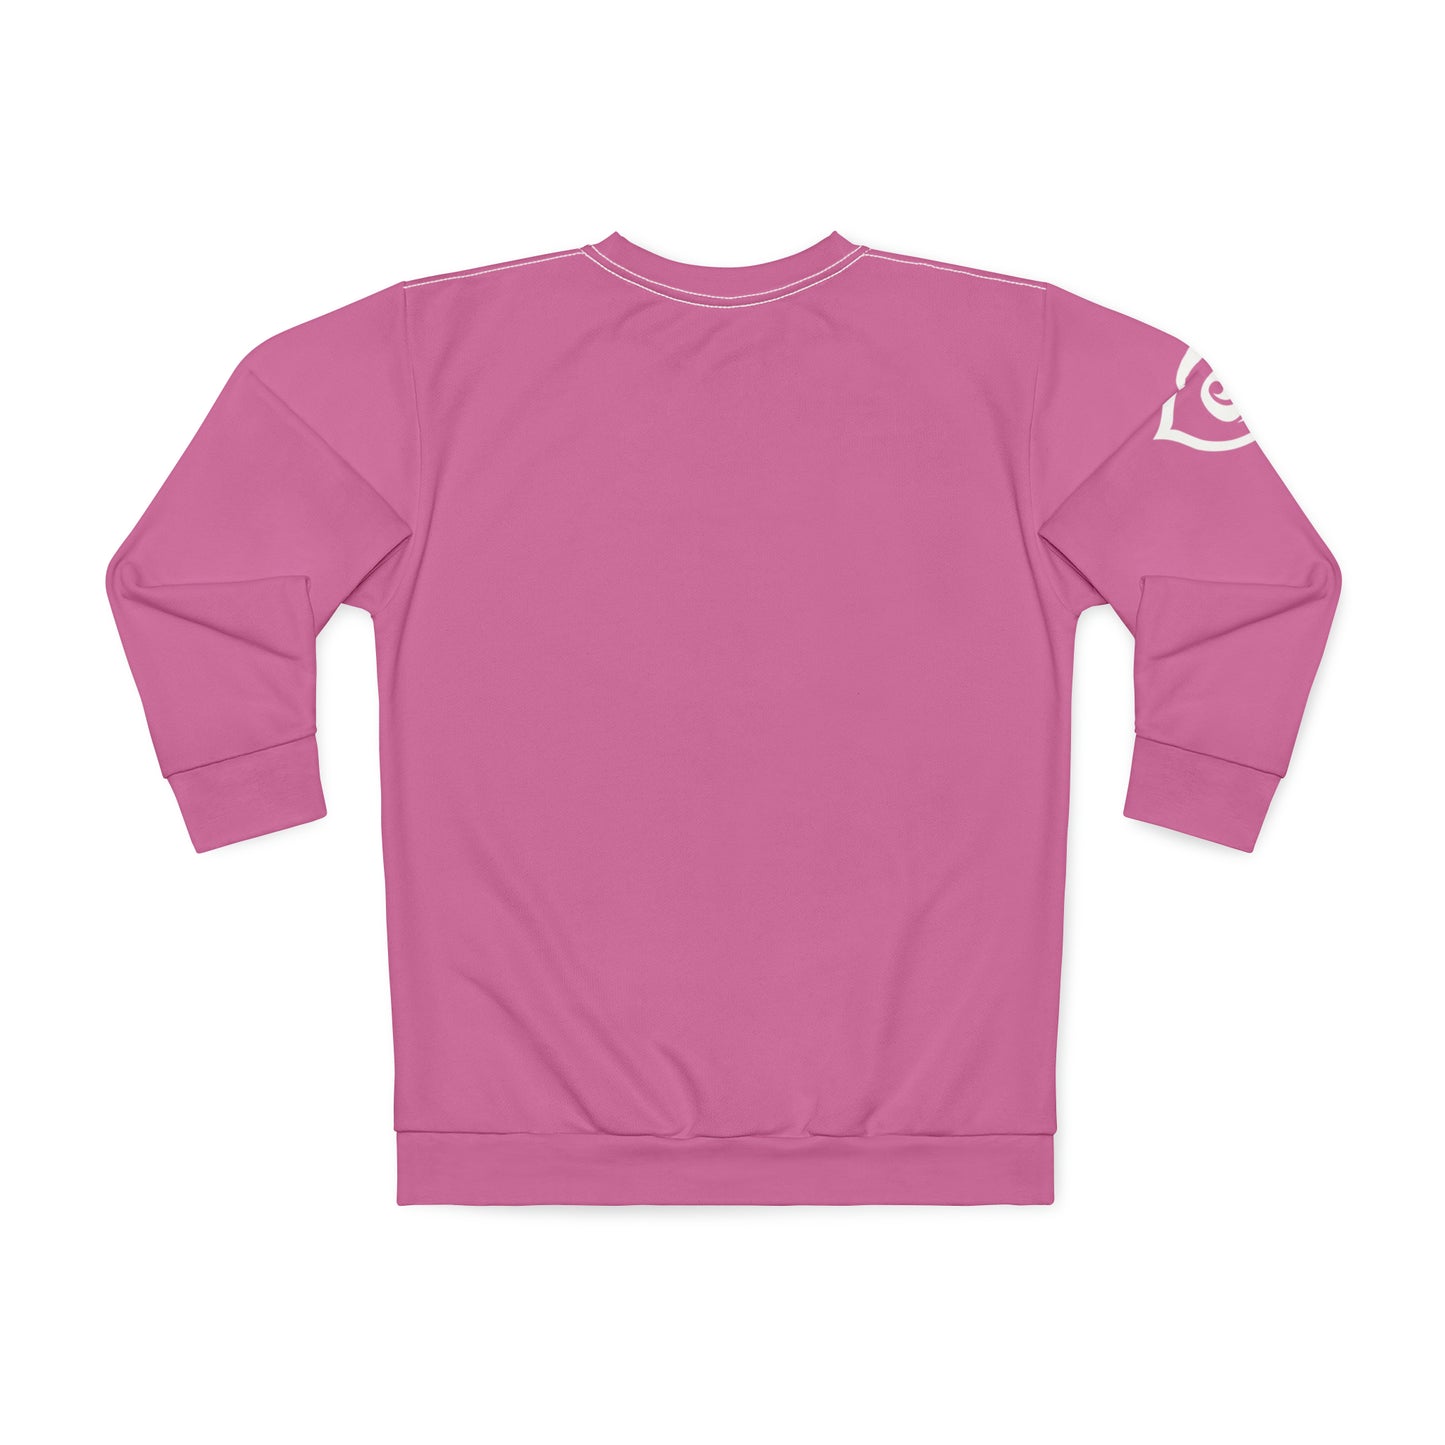 LADIES -VS- EVERYBODY Unisex Sweatshirt (AOP)